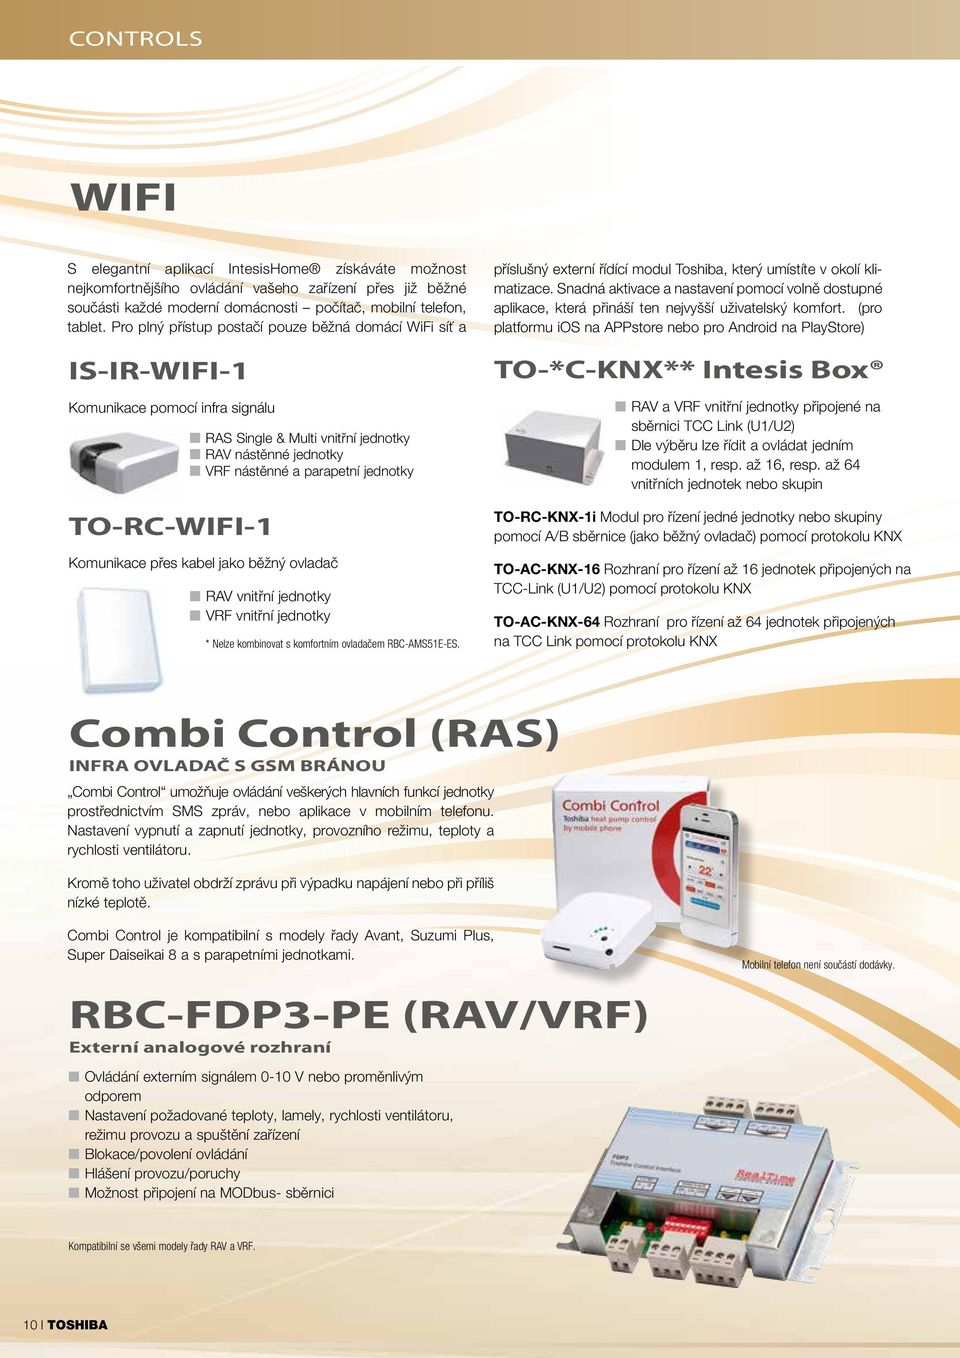 jednotky Komunikace přes kabel jako běžný ovladač RAV vnitřní jednotky VRF vnitřní jednotky * Nelze kombinovat s komfortním ovladačem RBC-AMS51E-ES.